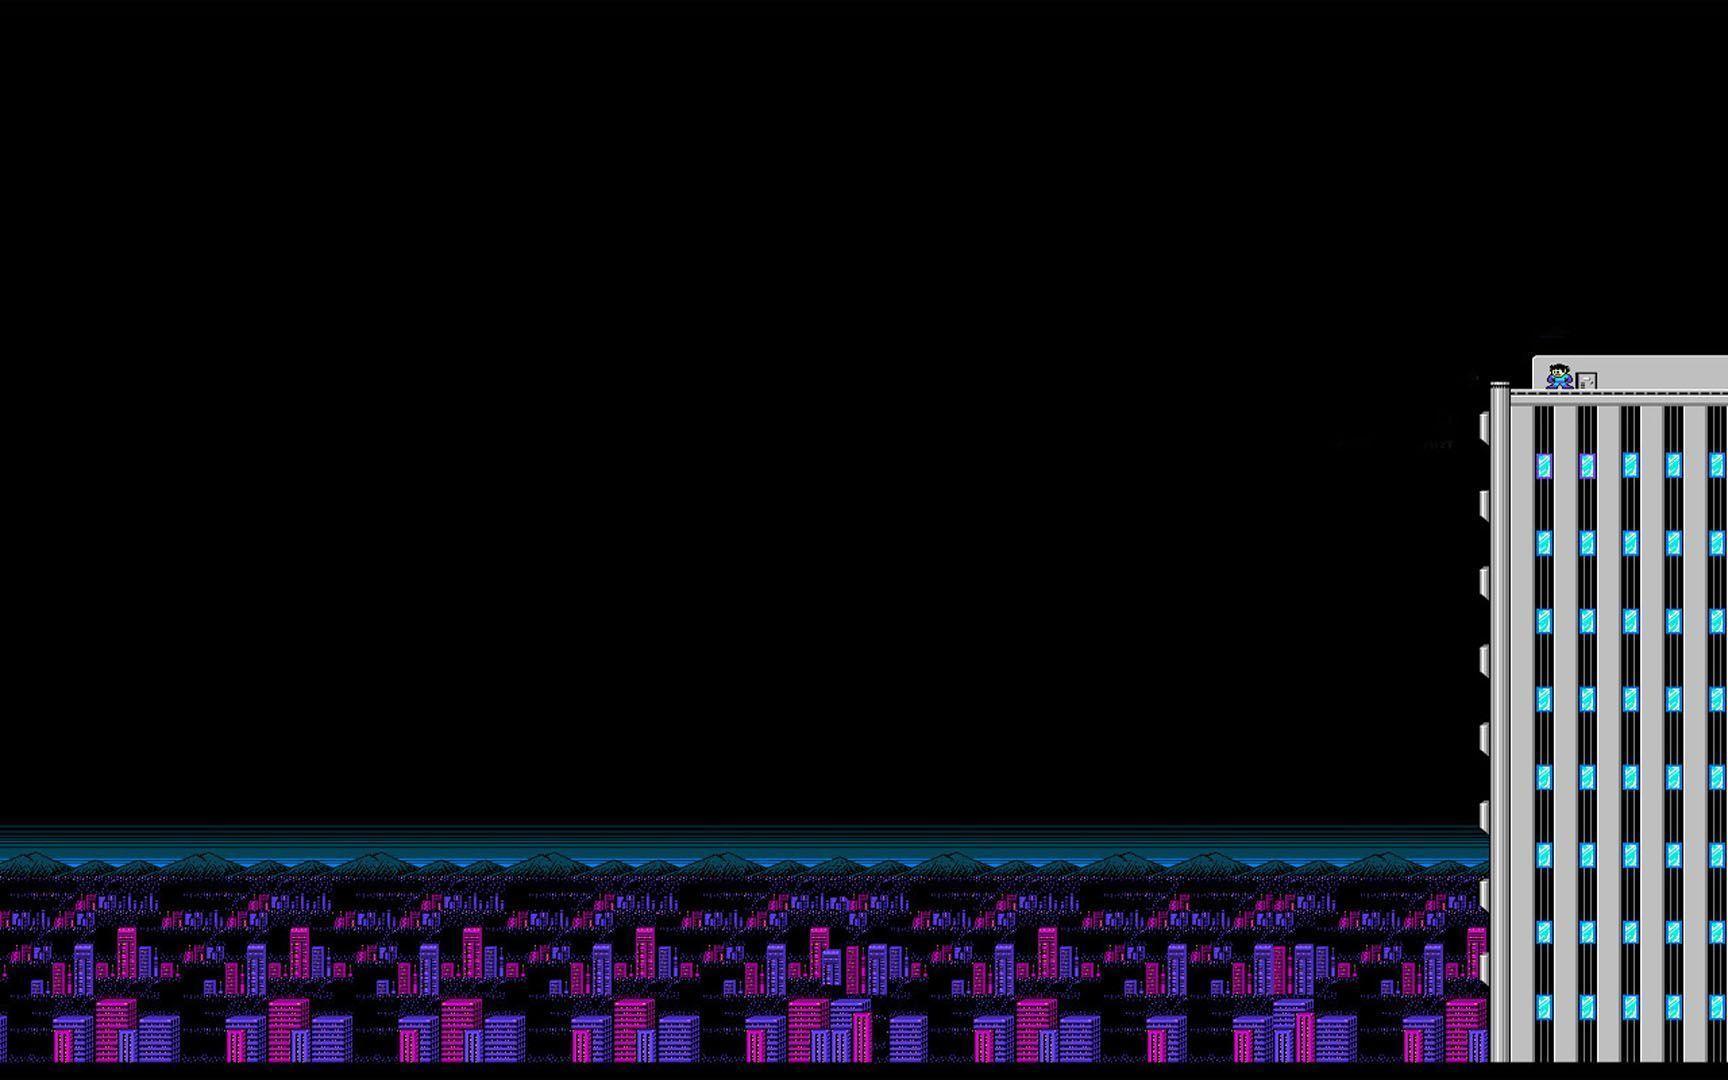 Megaman 2 16 Bit On A Skyscraper Games Wallpaper Image